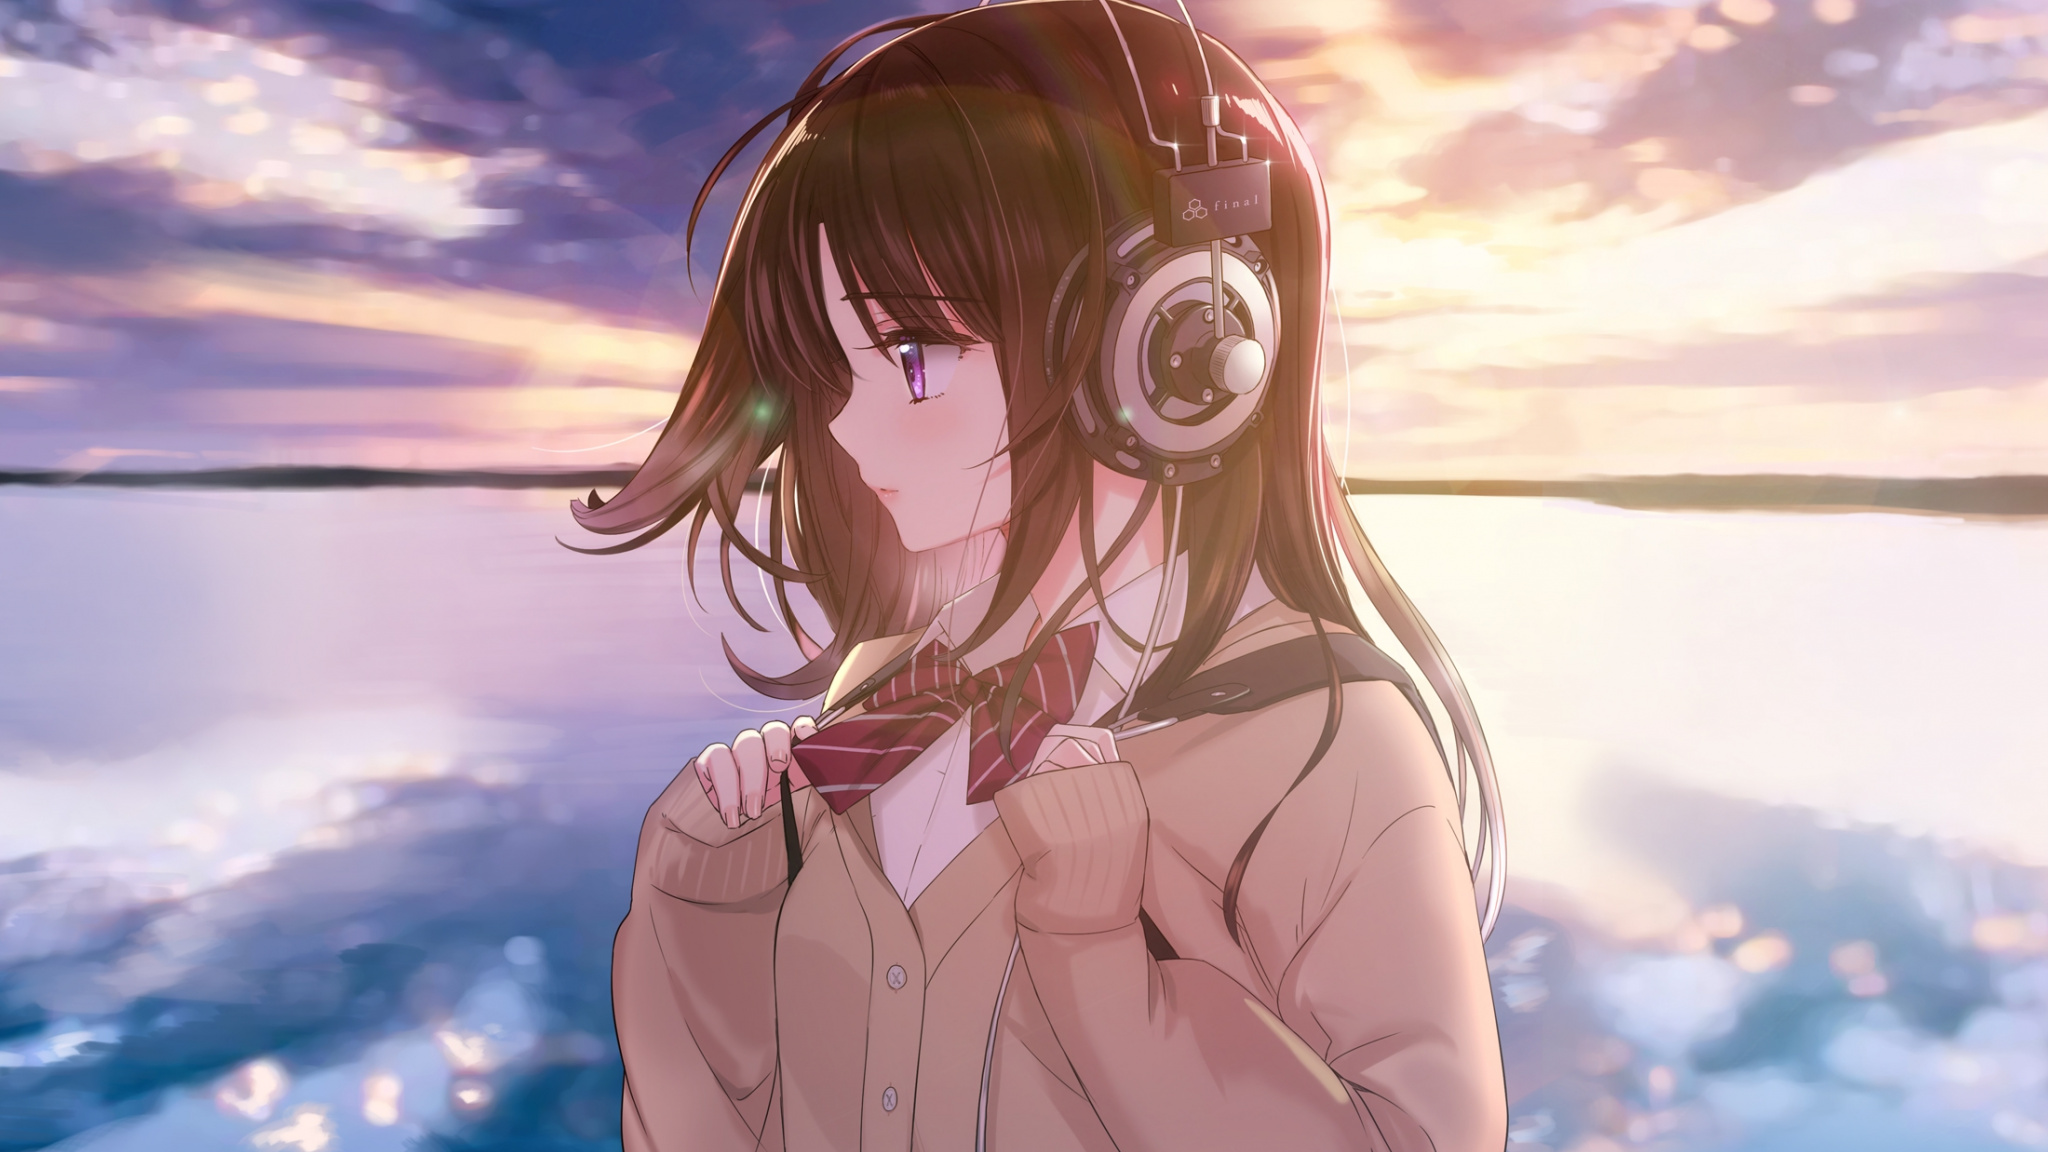 Download Anime girl, original, headphone, sunset, outdoor, art wallpaper, 2048x Dual Wide, Widescreen